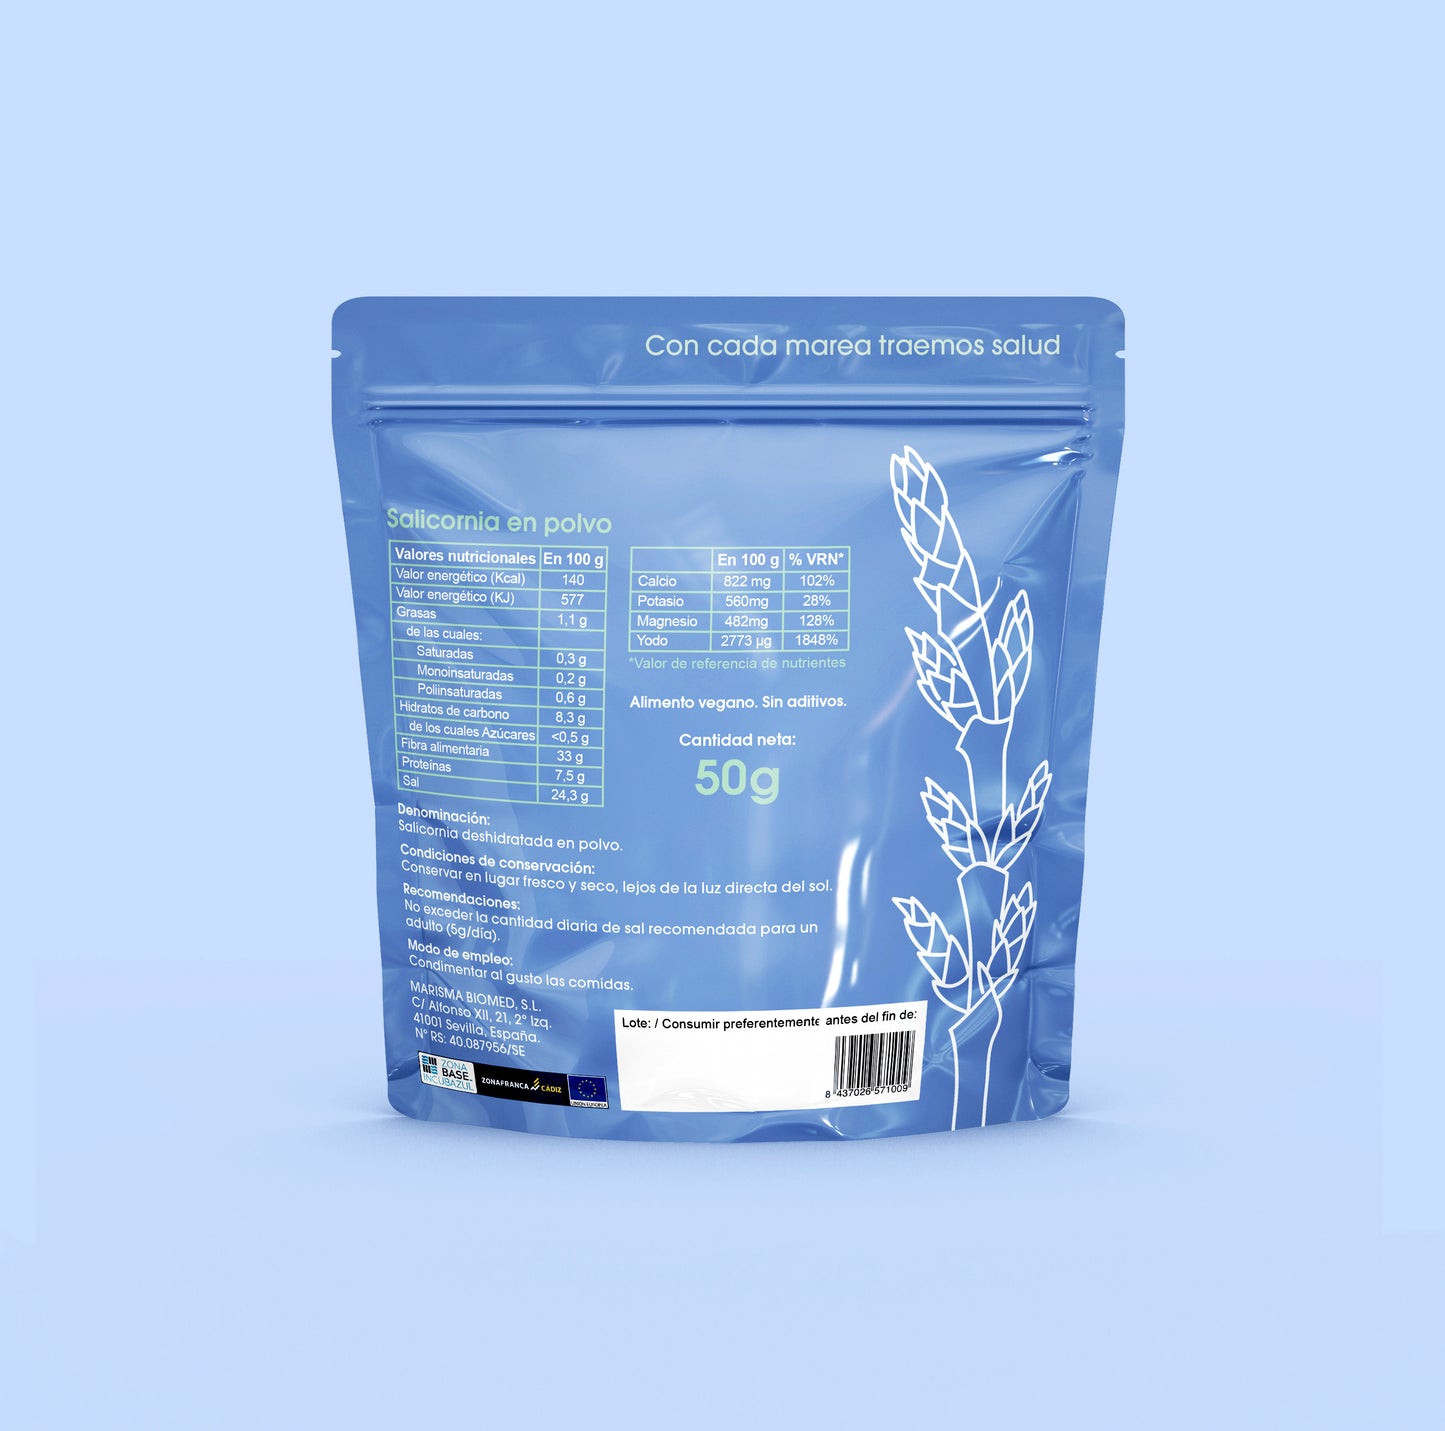 Cara trasera del packaging del producto Salicornia en polvo de Marisma Biomed. Fondo azul.